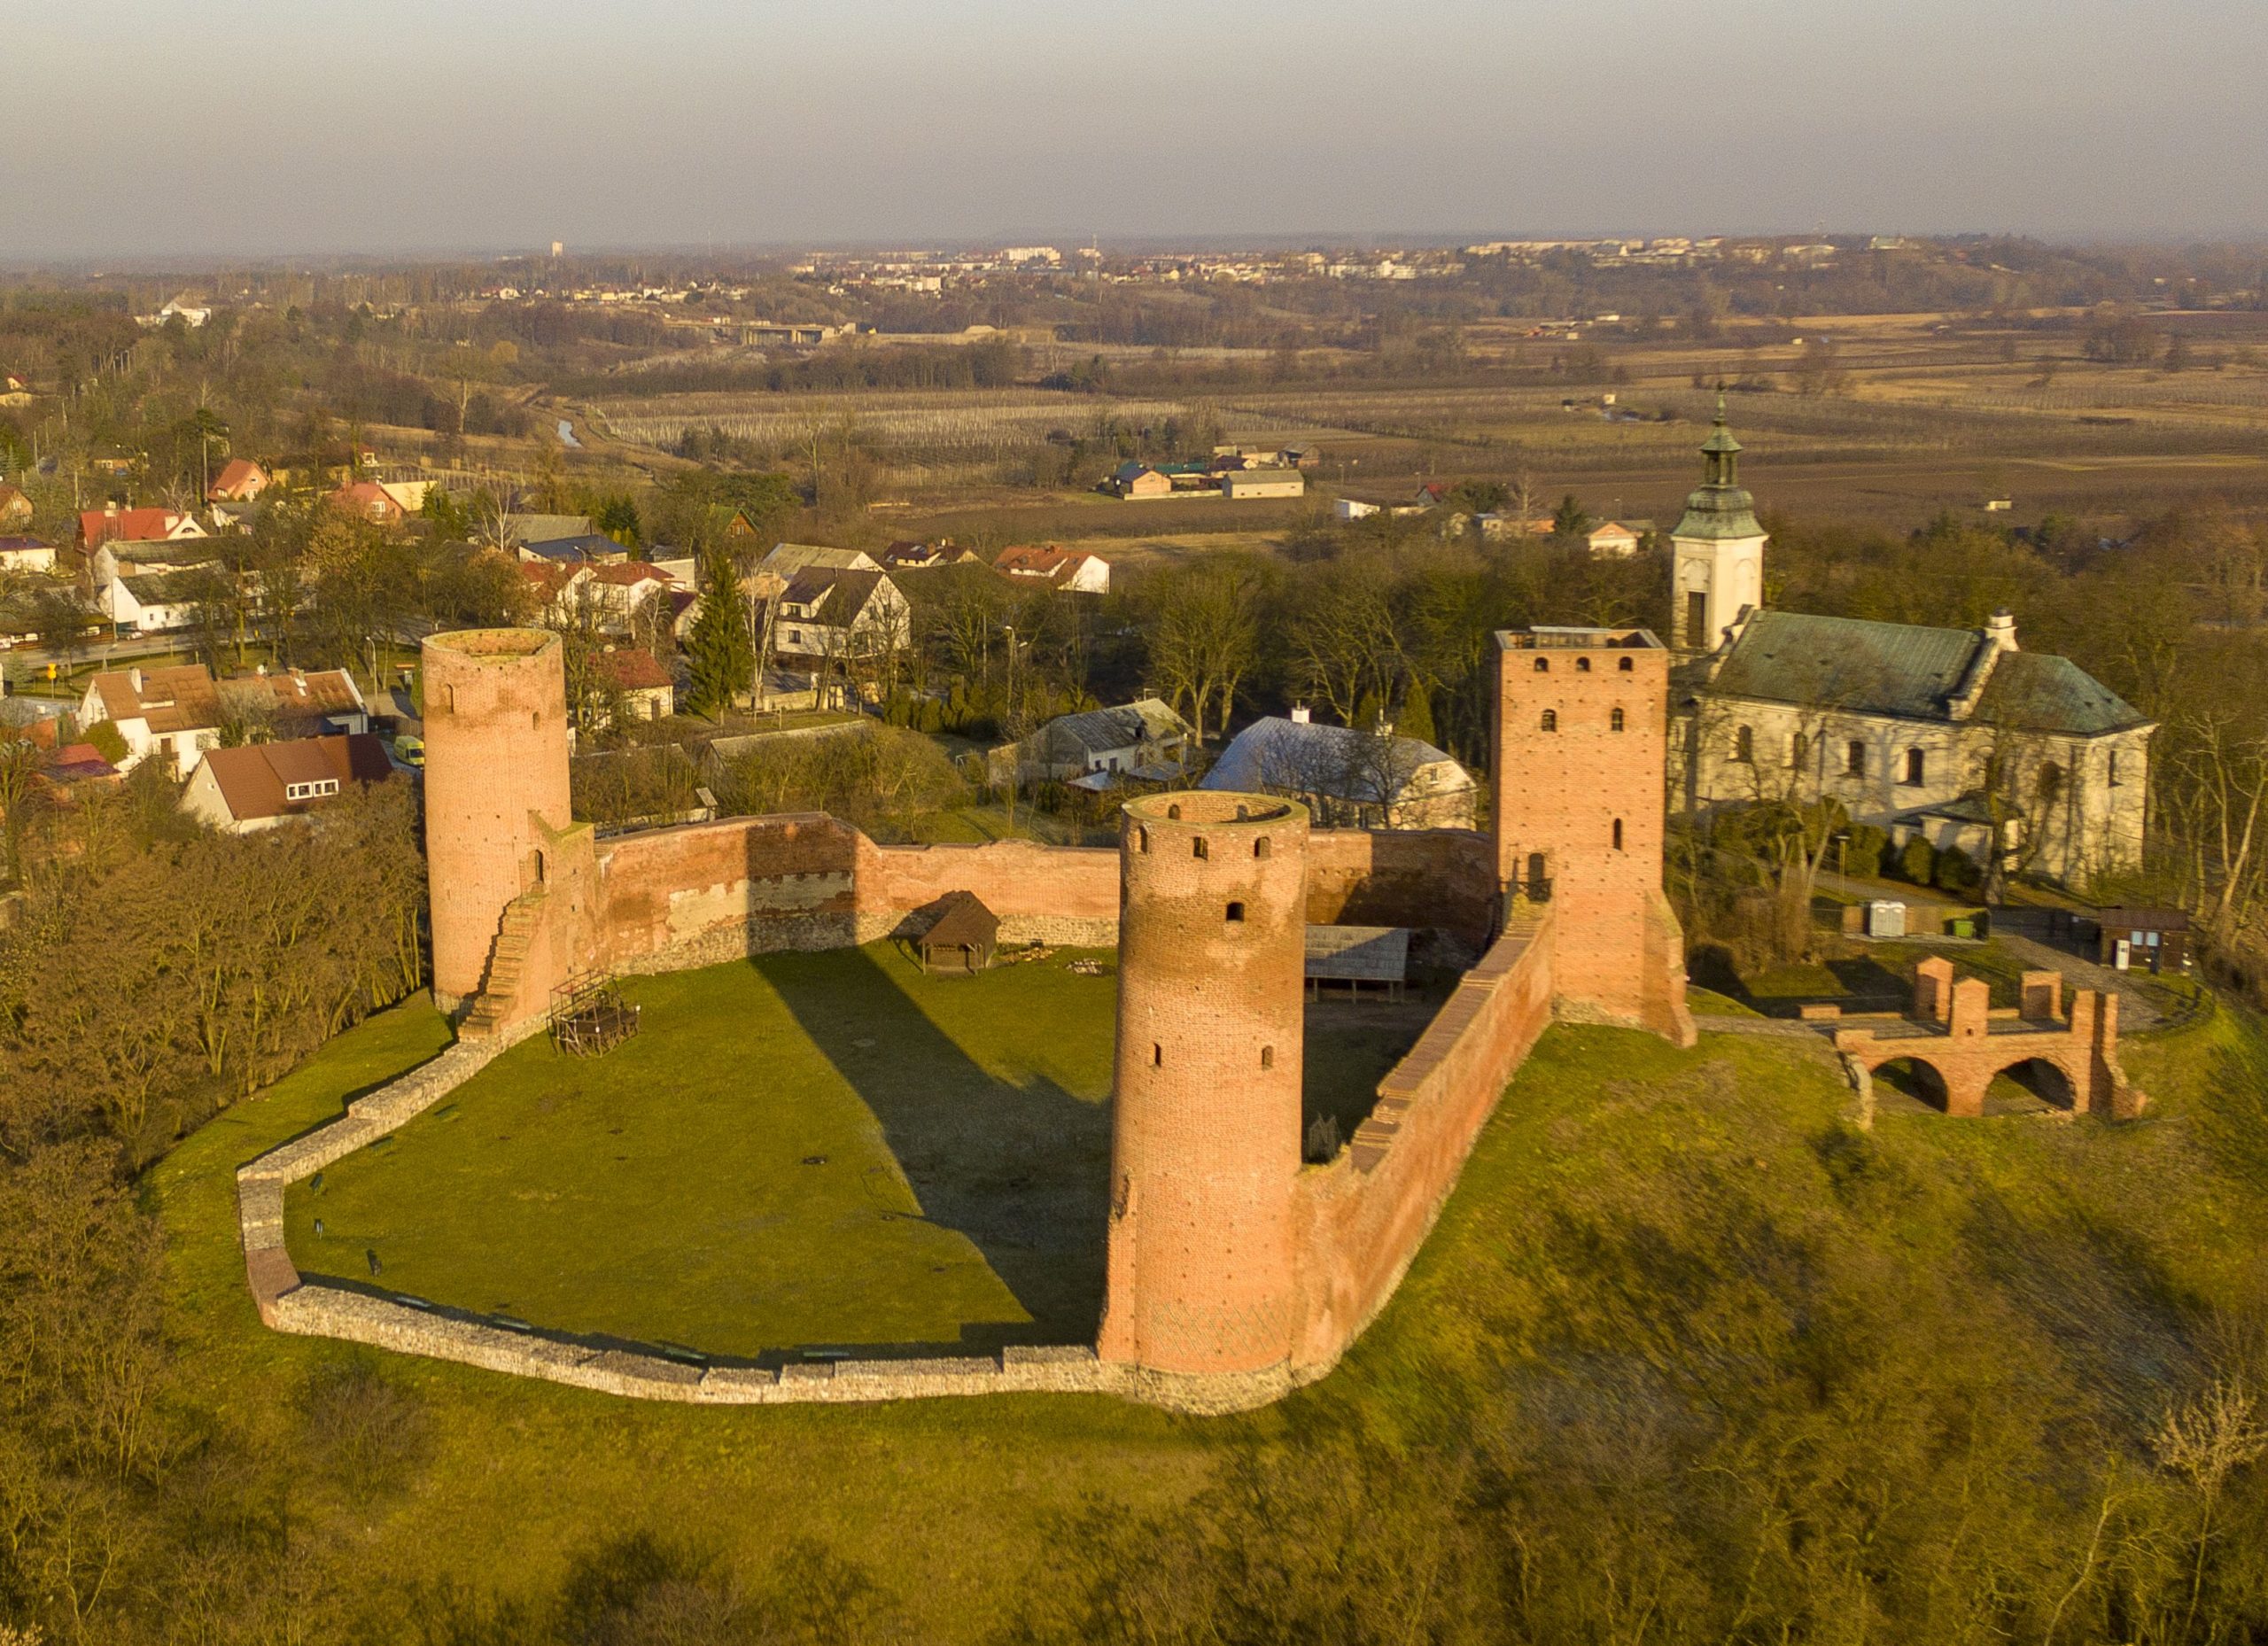 Zamek w Czersku - widok z lotu ptaka